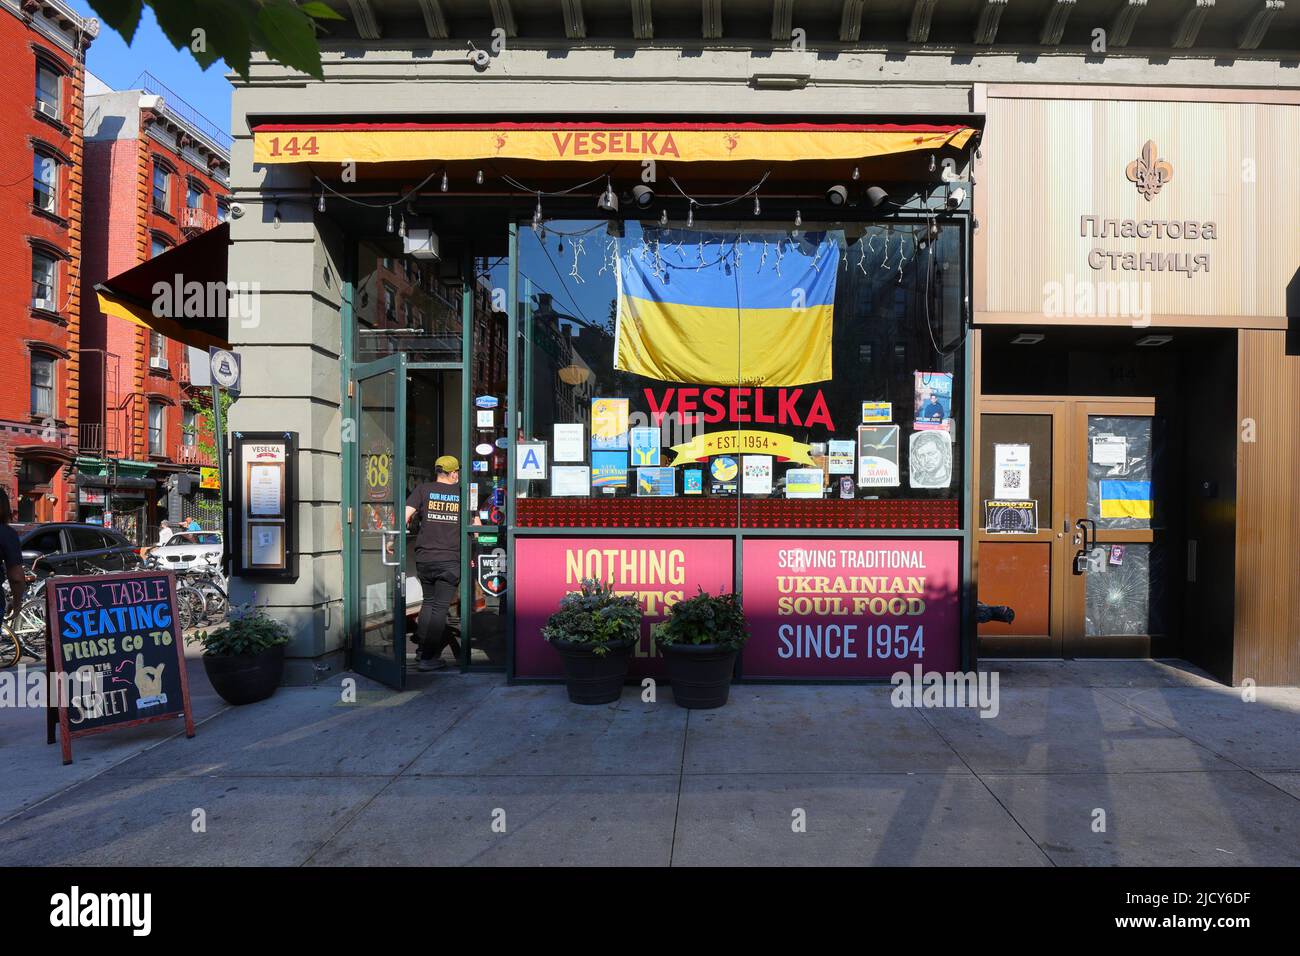 Veselka, 144 2. Ave, New York, NYC Foto von einem ukrainischen Diner und einem Straßencafe im East Village Viertel in Manhattan. Stockfoto